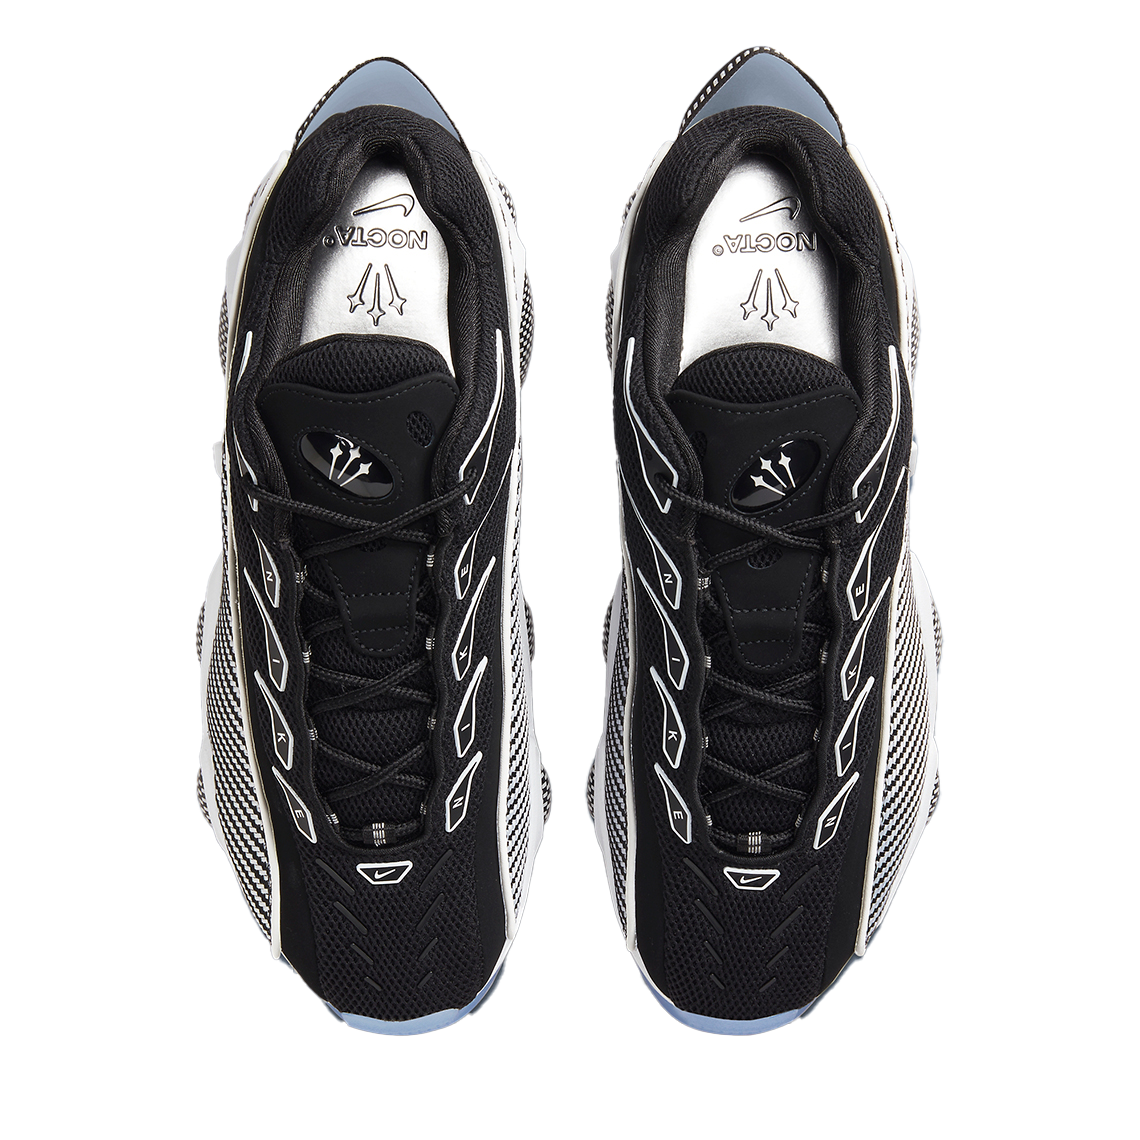 Nike Drake NOCTA Glide In Black/White